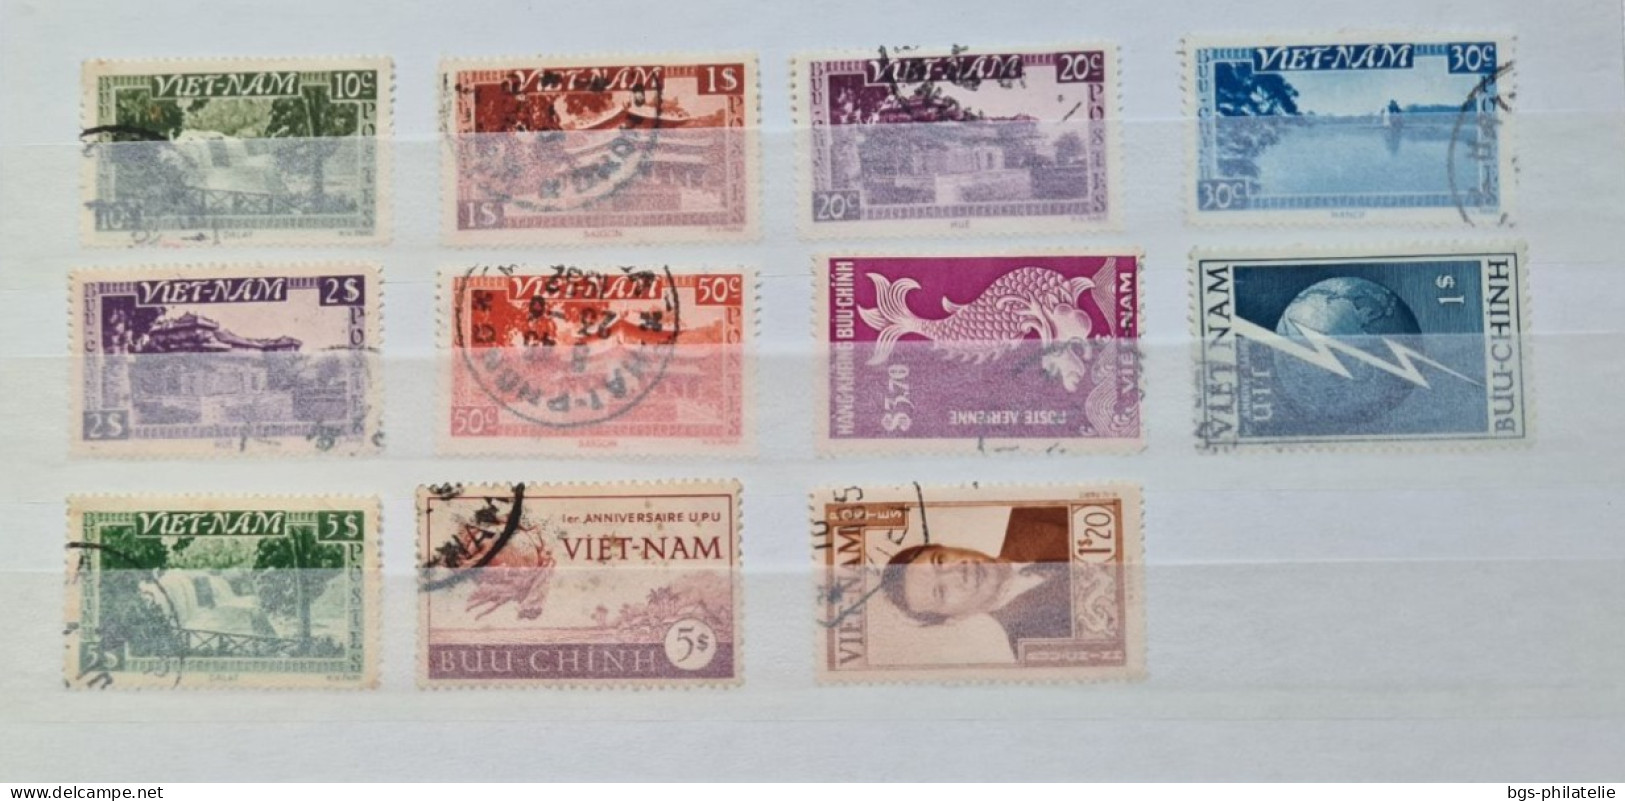 Collection de timbres de colonies Françaises oblitérés.